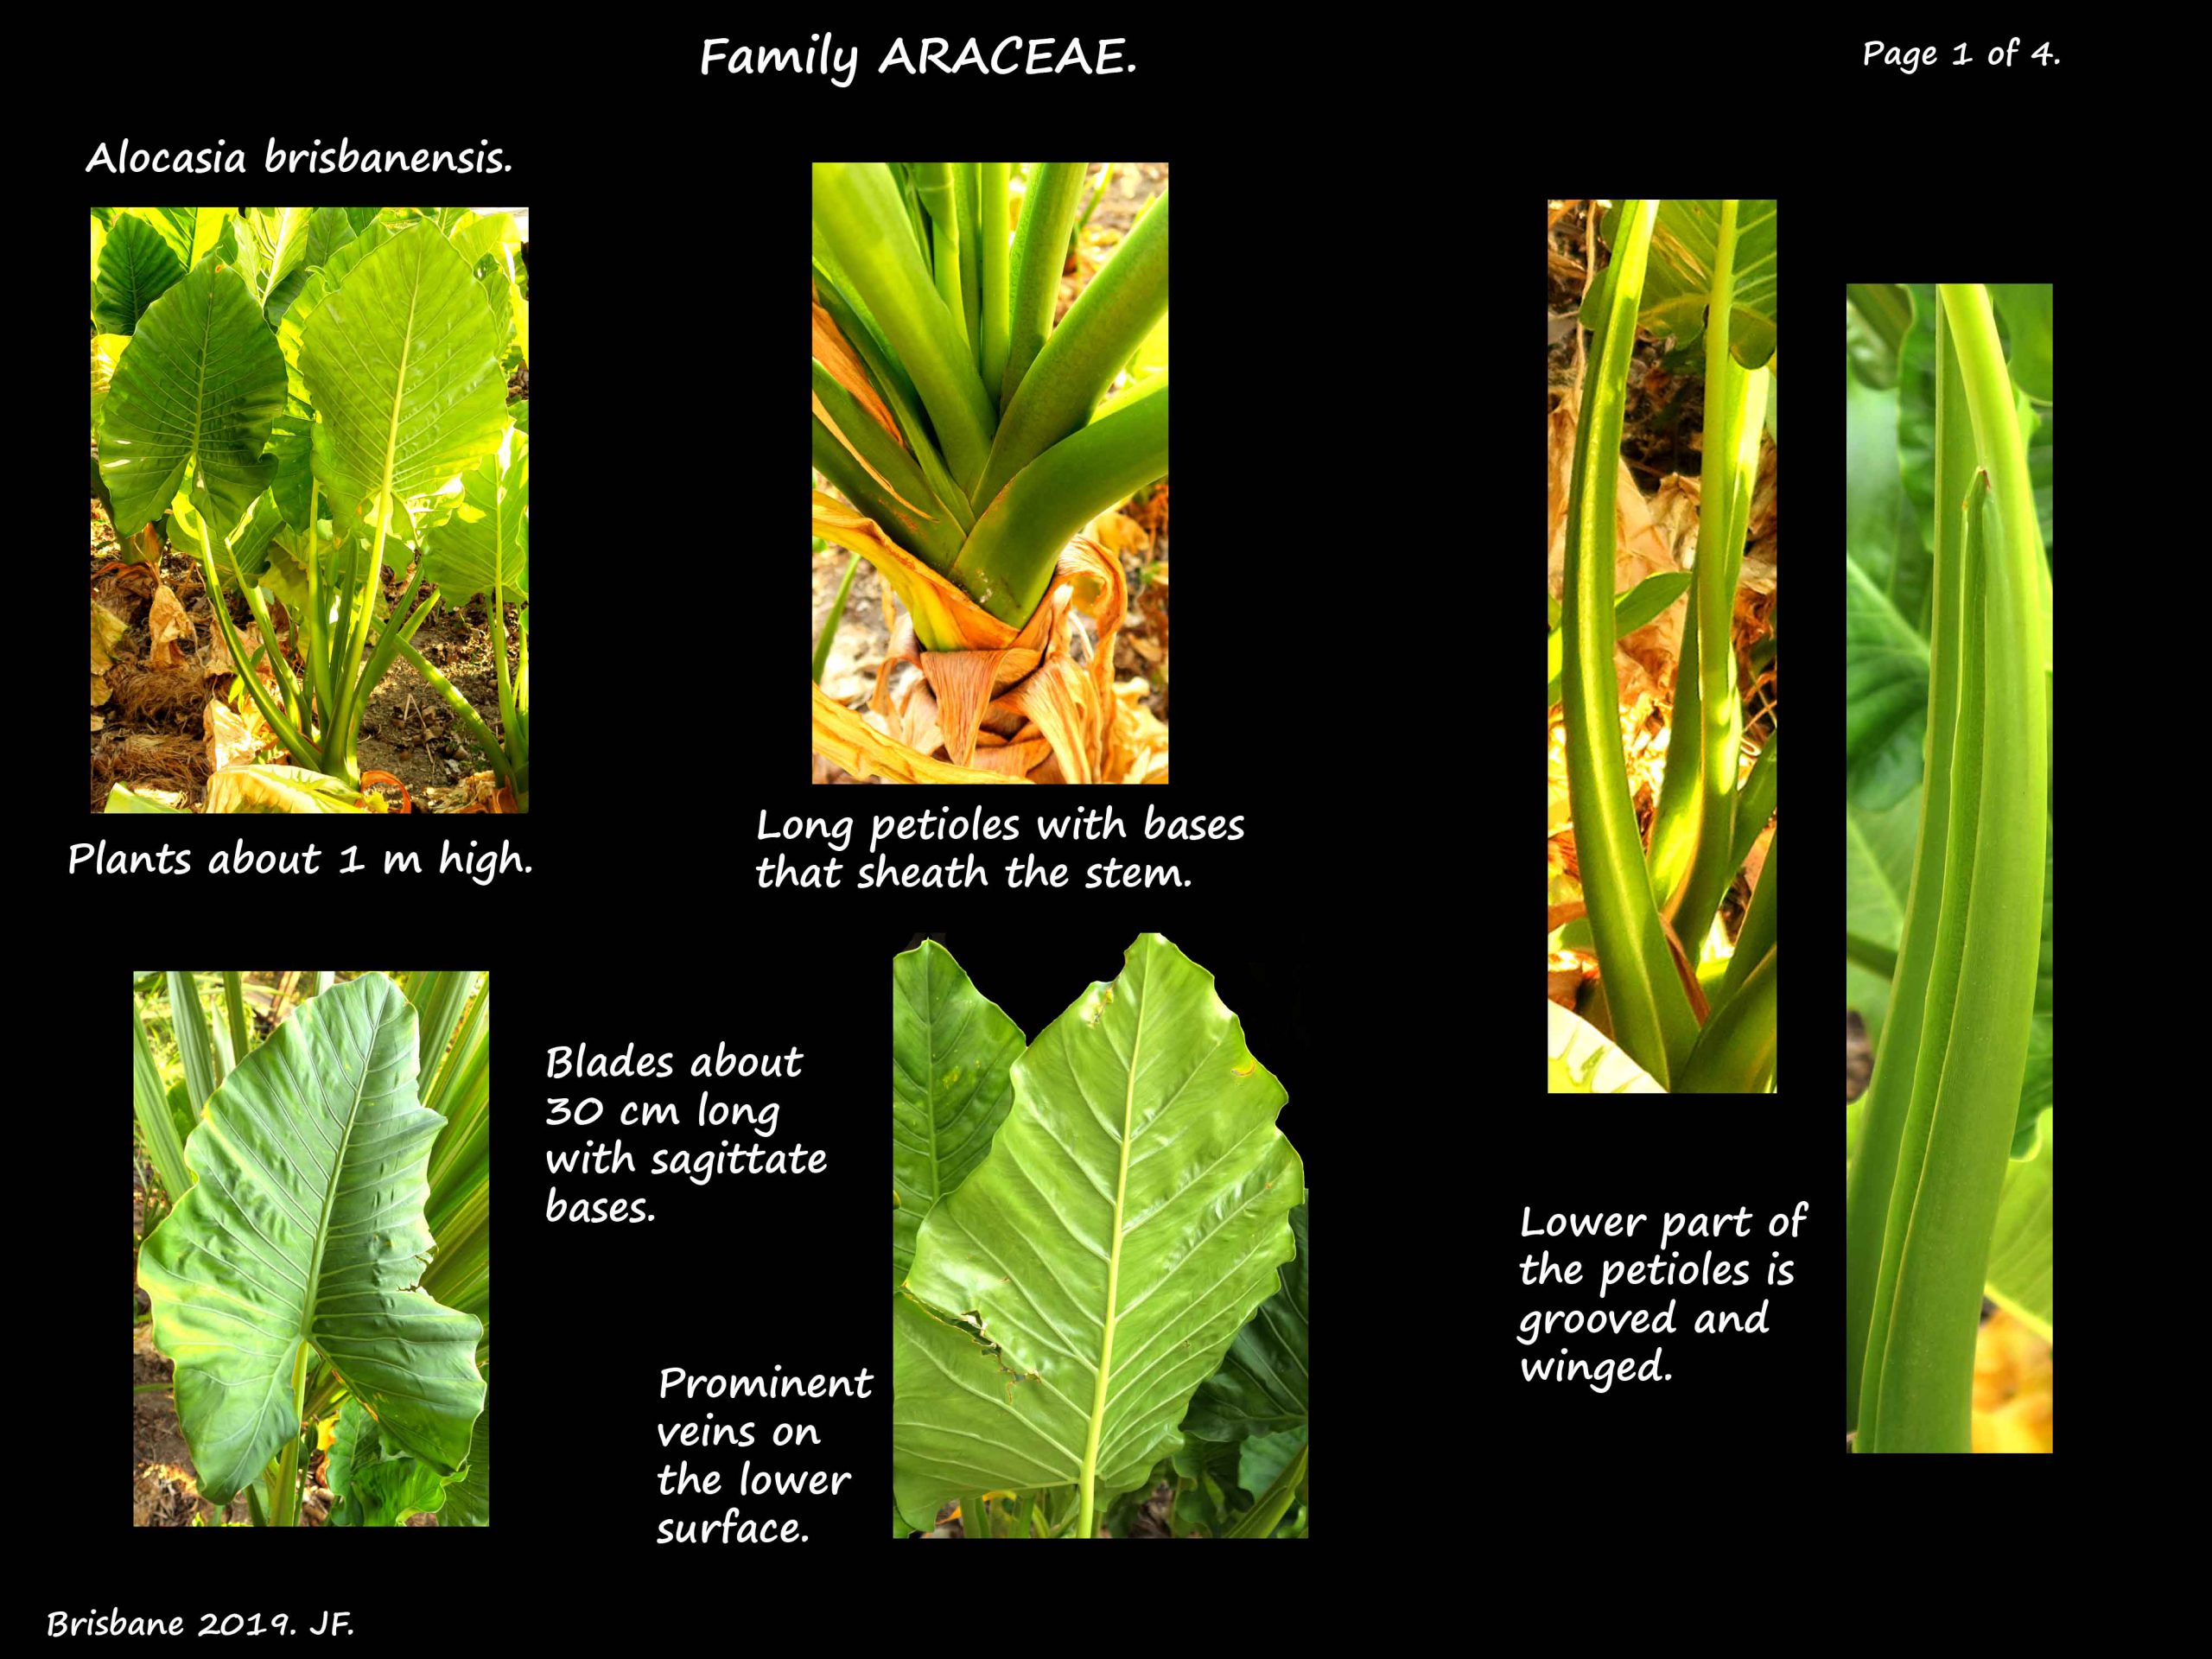 1 Alocasia brisbaniensis leaves